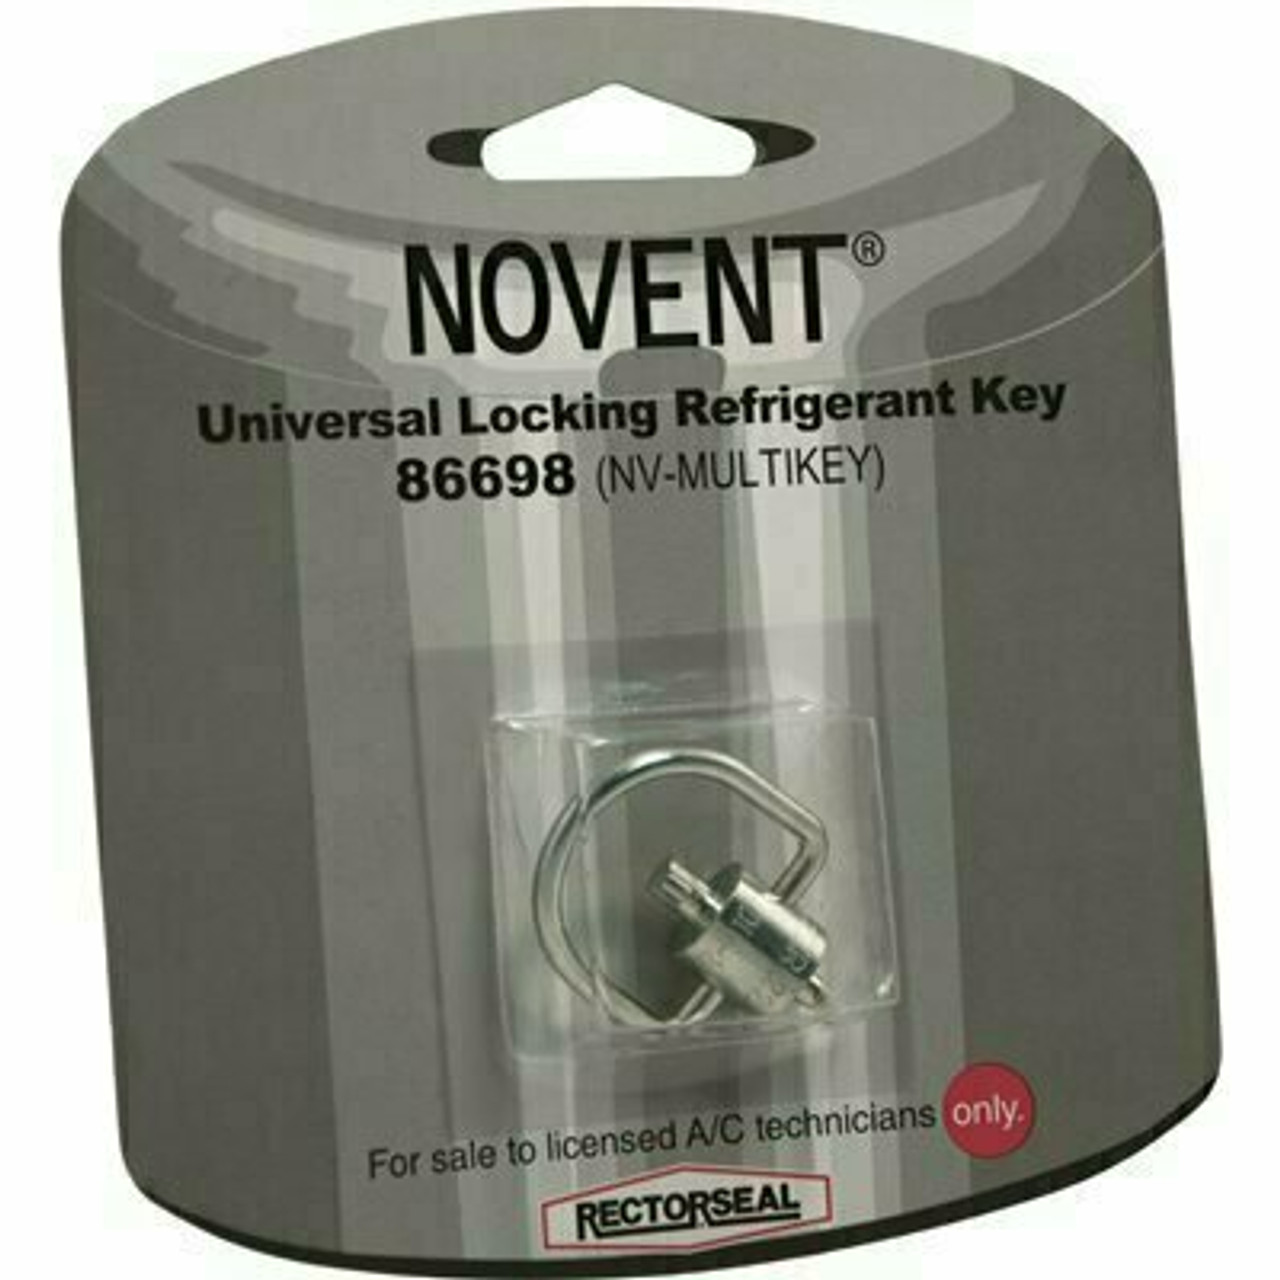 Rectorseal Novent Multi-Key